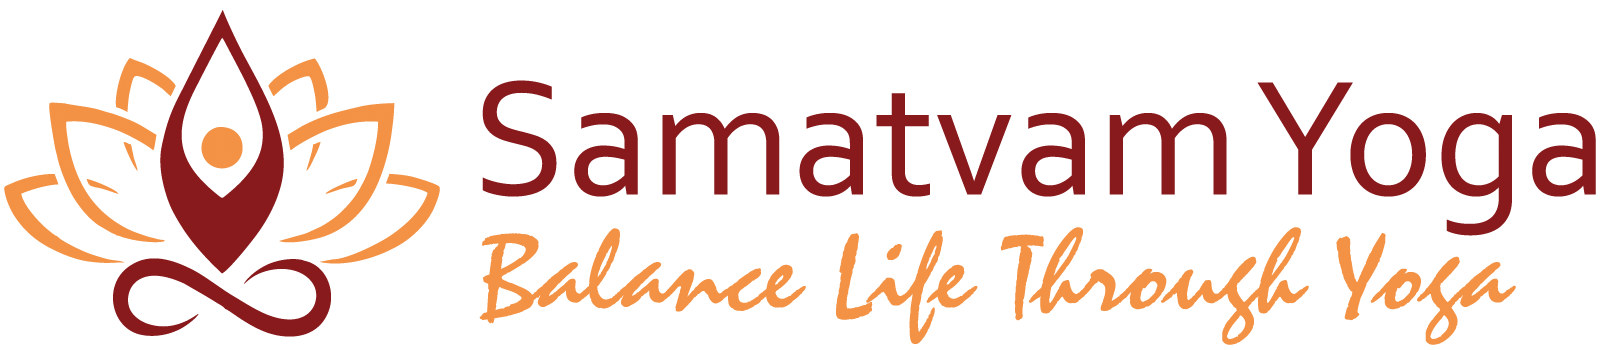 Samatvam Yoga - Balance Life through Yoga